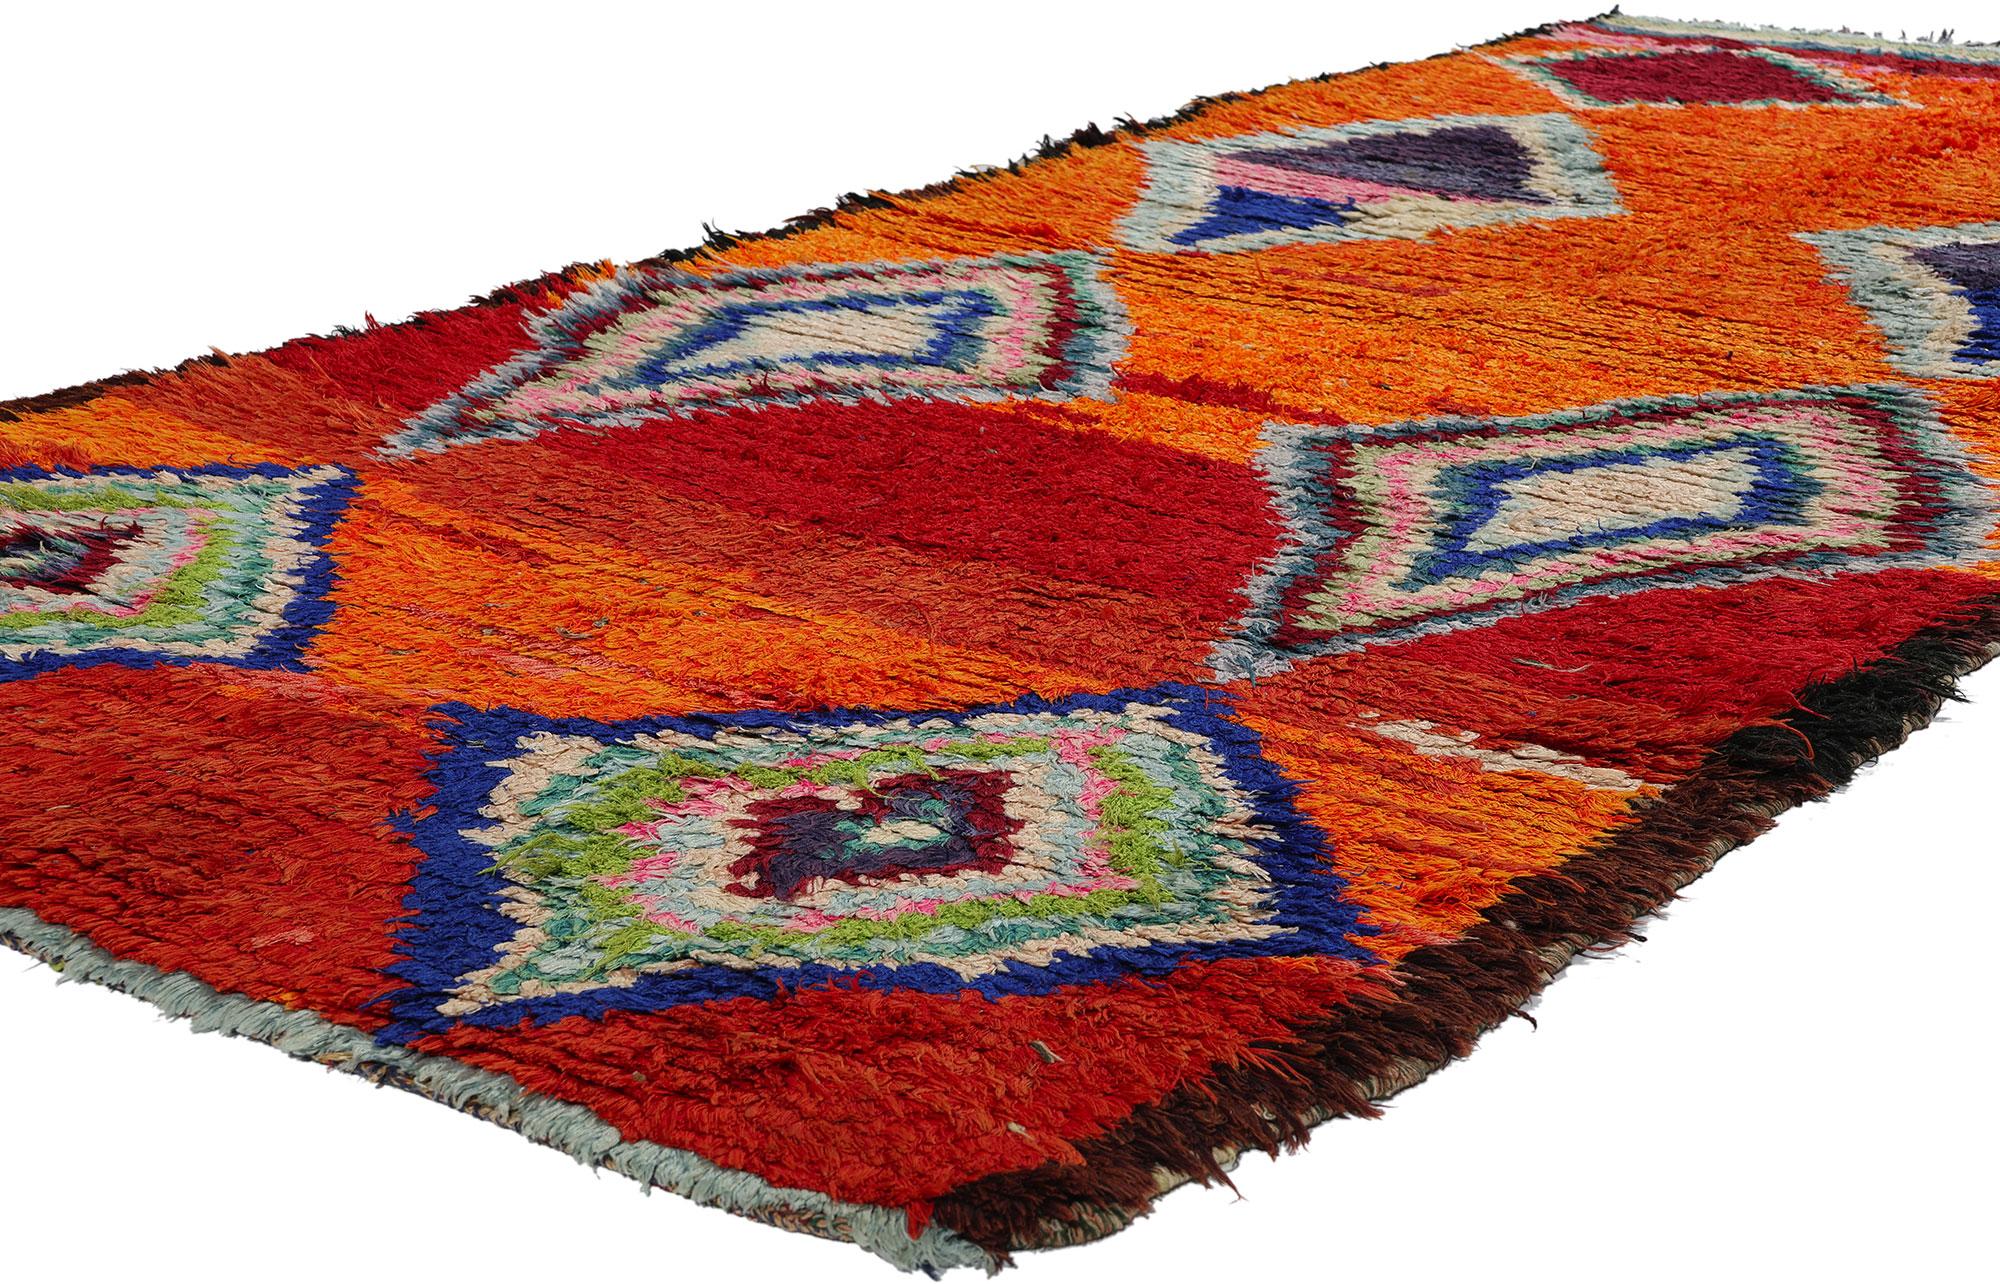 21830 Vintage Orange Boujad Marokkanischer Teppich, 04'00 x 08'05. Ein Boujad-Teppich ist ein handgewebter Teppich, der aus der Region Boujad im Mittleren Atlasgebirge in Marokko stammt. Diese Teppiche werden traditionell von Berberstämmen,